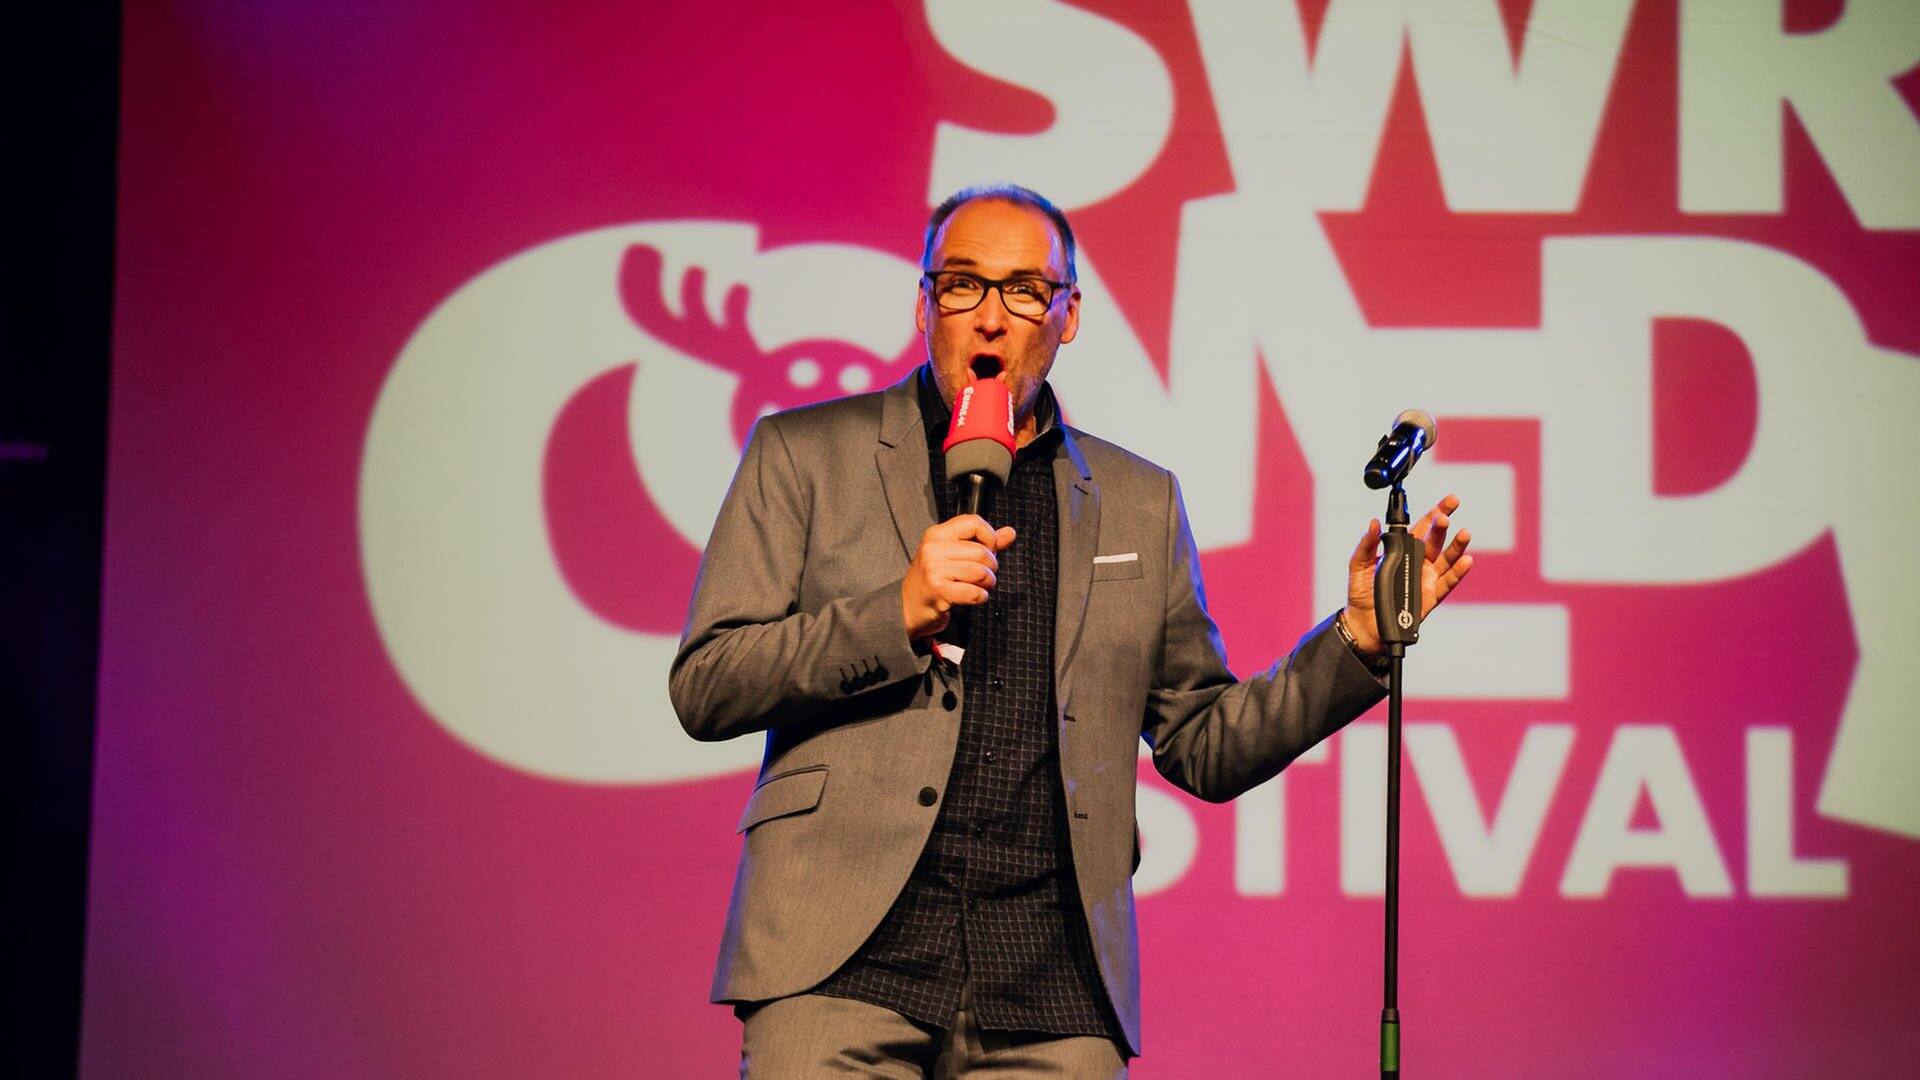 Chris Tall beim SWR3 Comedy Festival 2018 (Foto: SWR3)